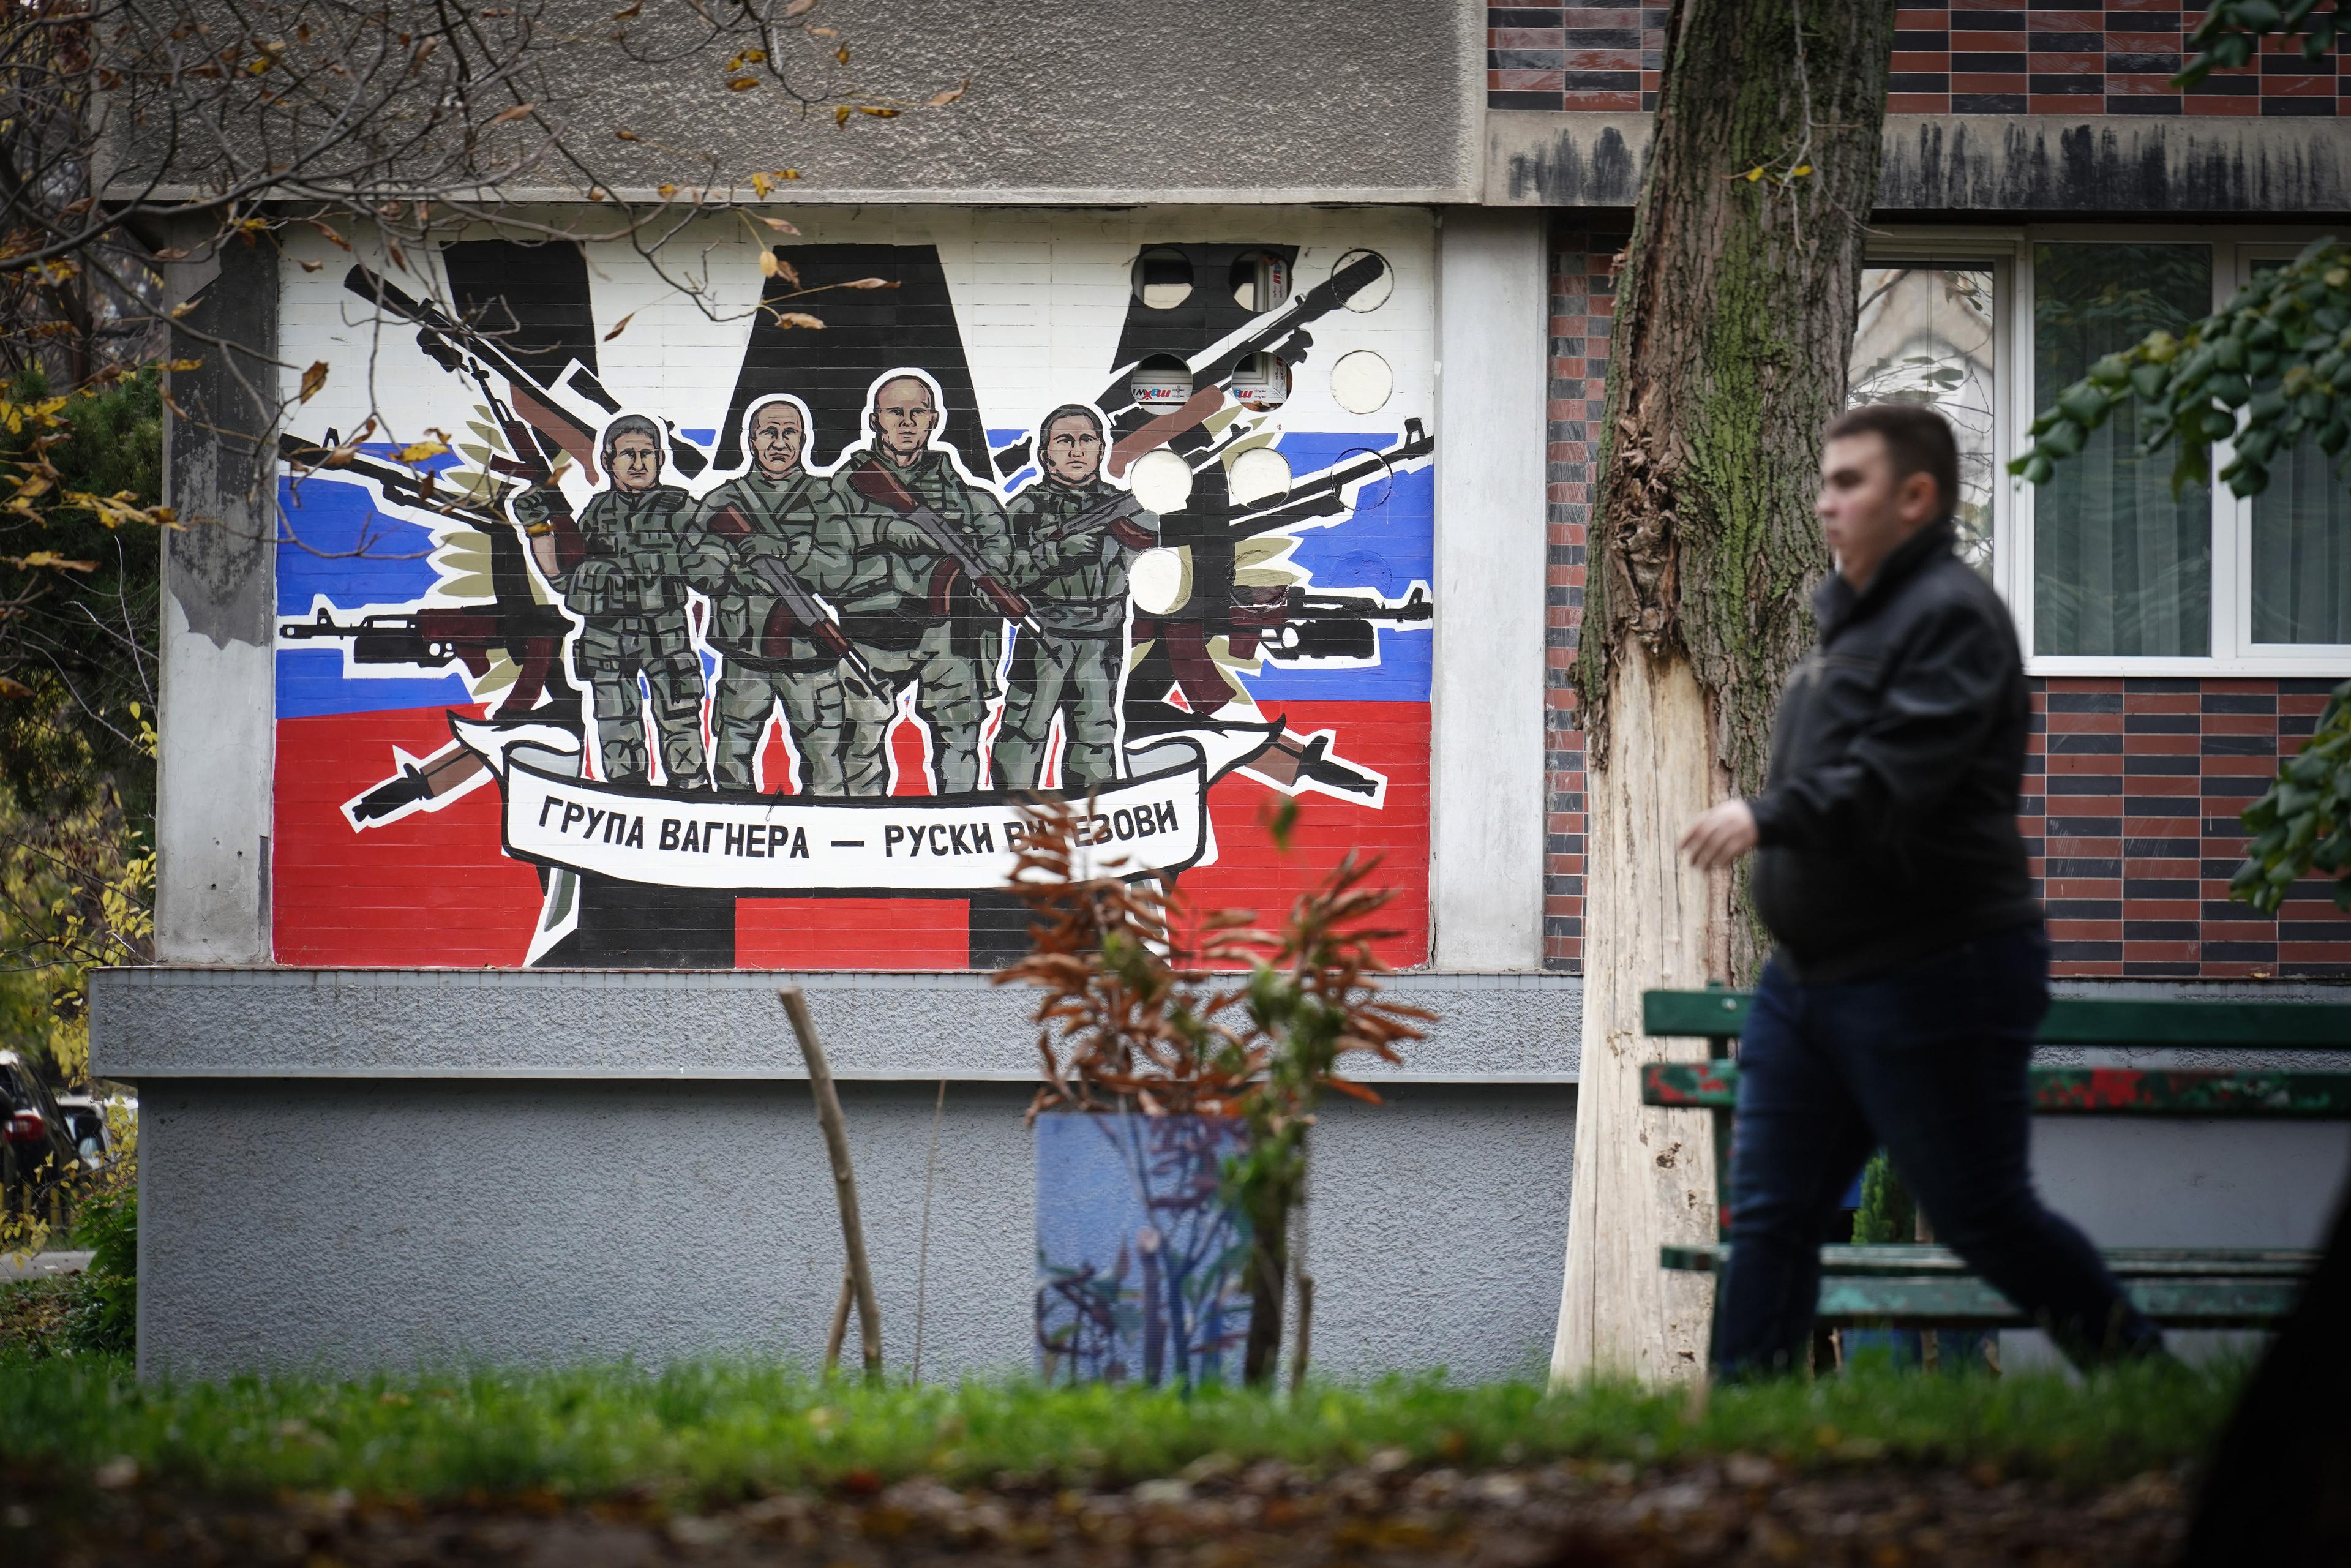 Czlowiek przechodzi koło domu z muralem w barwach Rosji. Serbski napis głosi "Grupa Wagnera - rosyjscy rycerze"